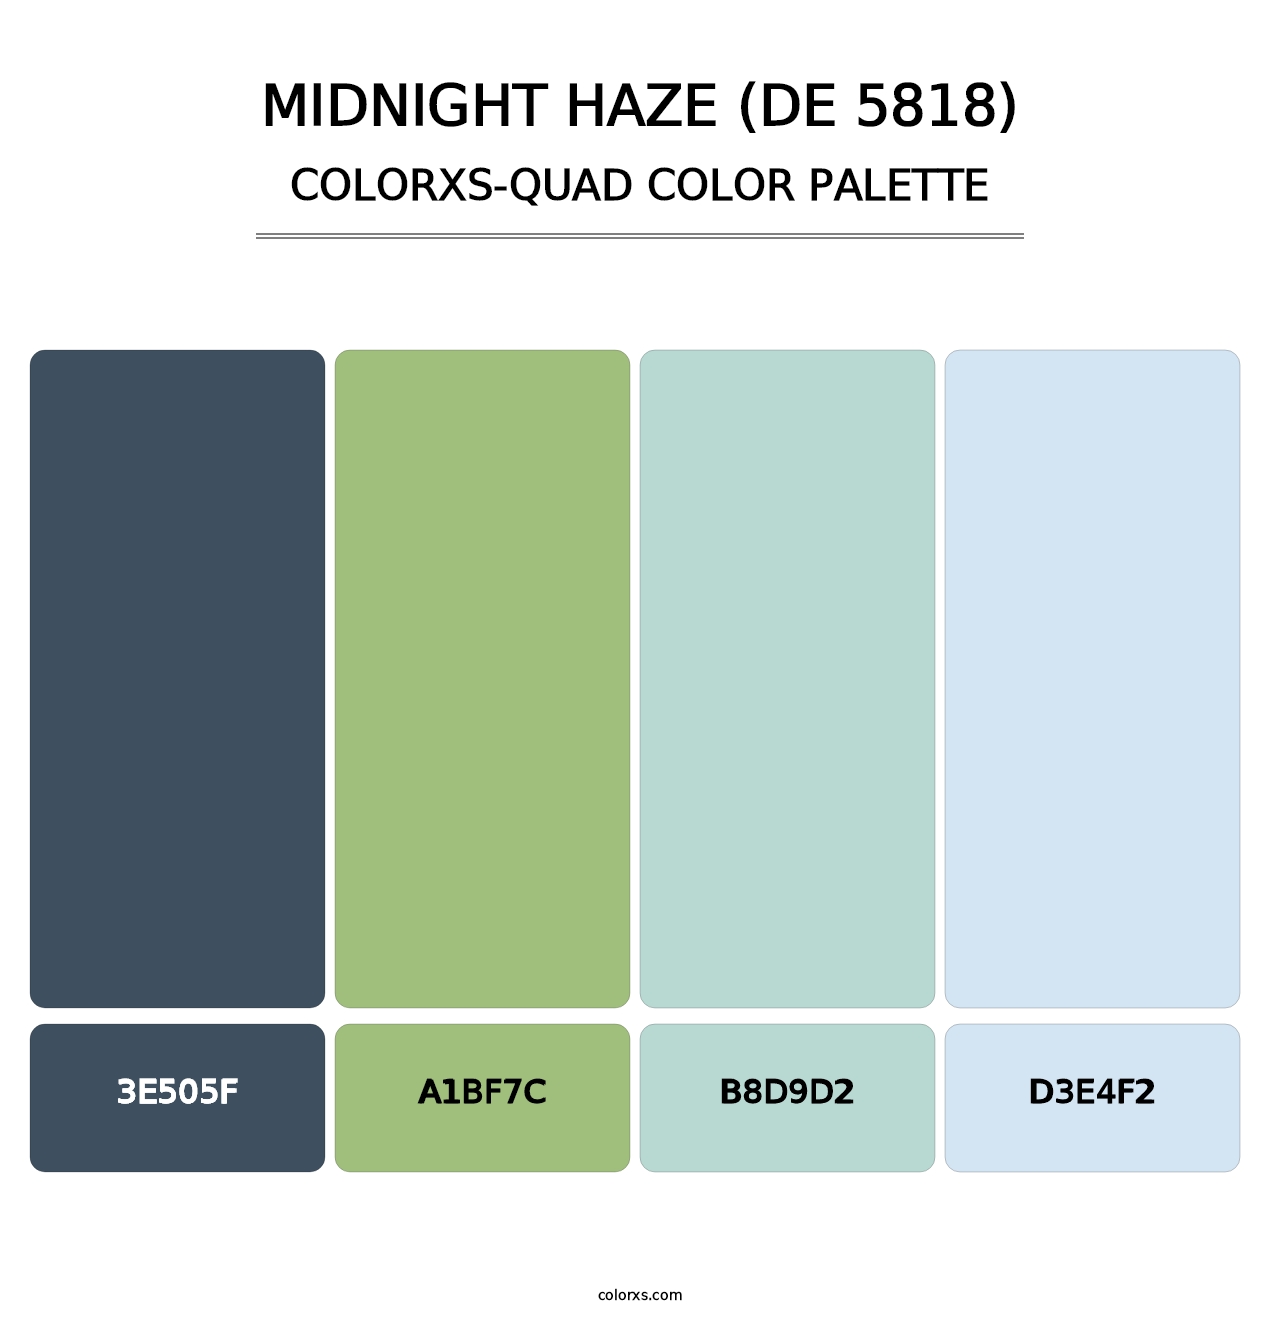 Midnight Haze (DE 5818) - Colorxs Quad Palette